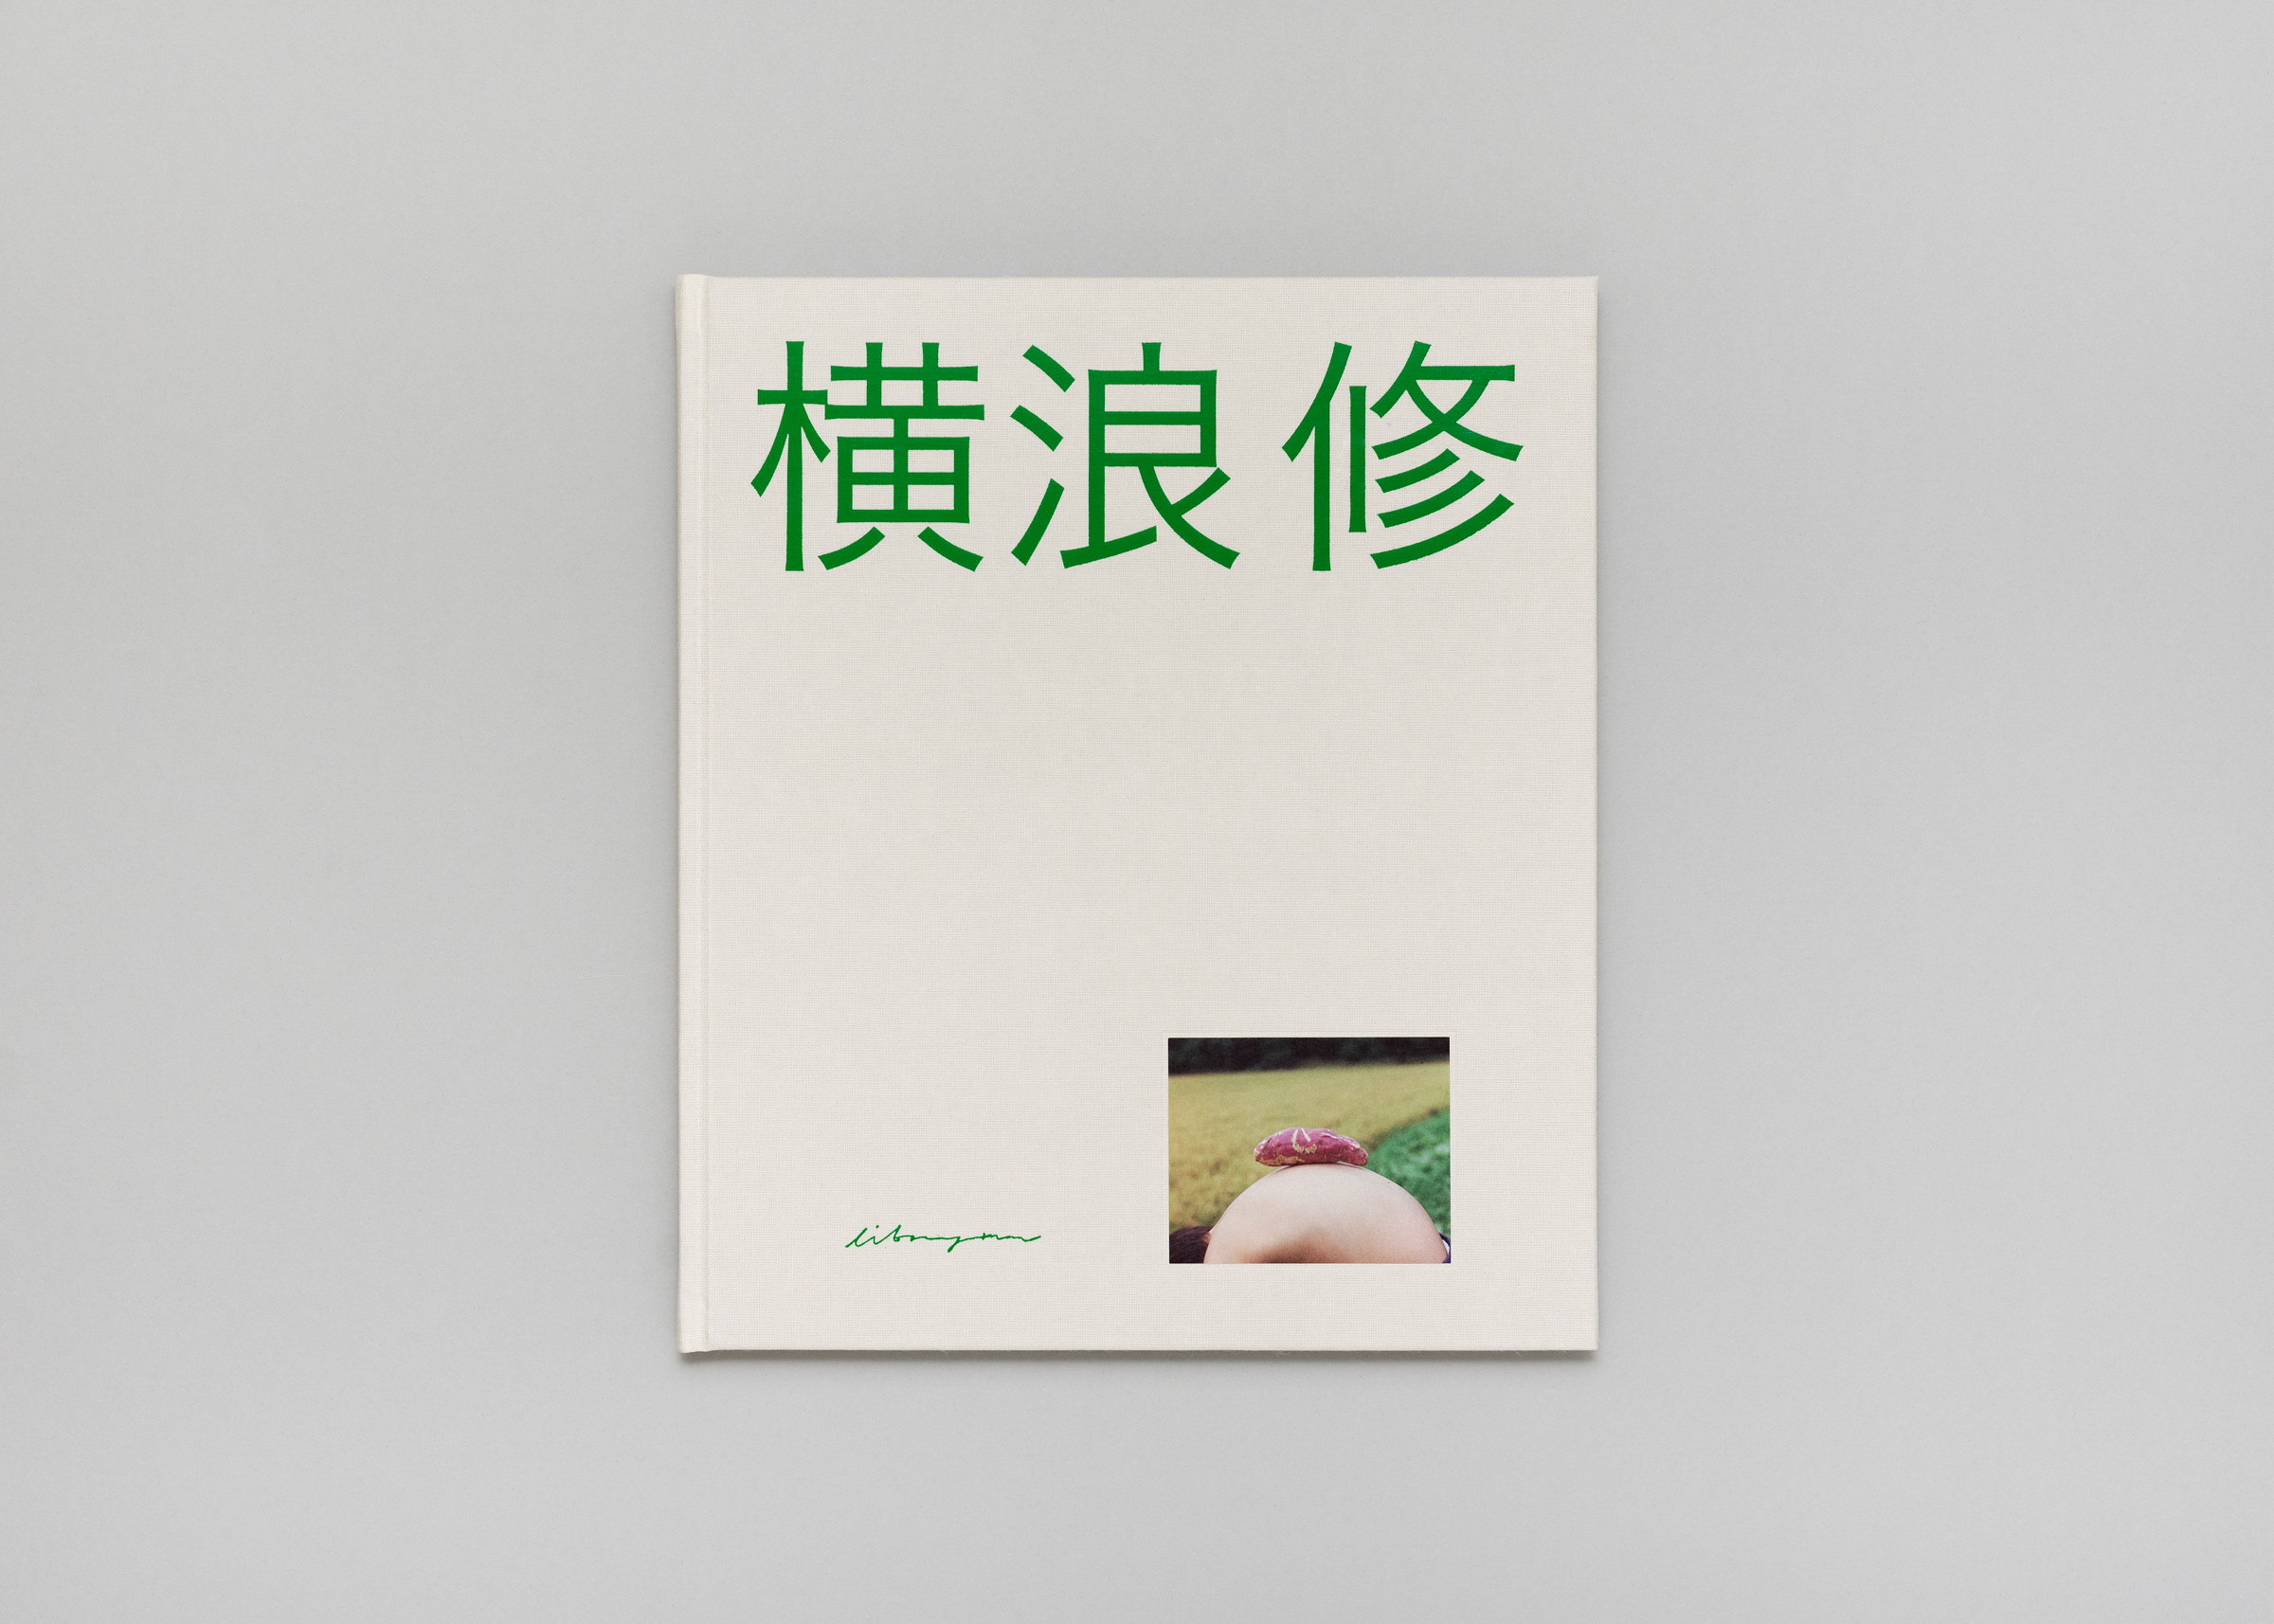 Osamu Yokonami — Small Town — Book